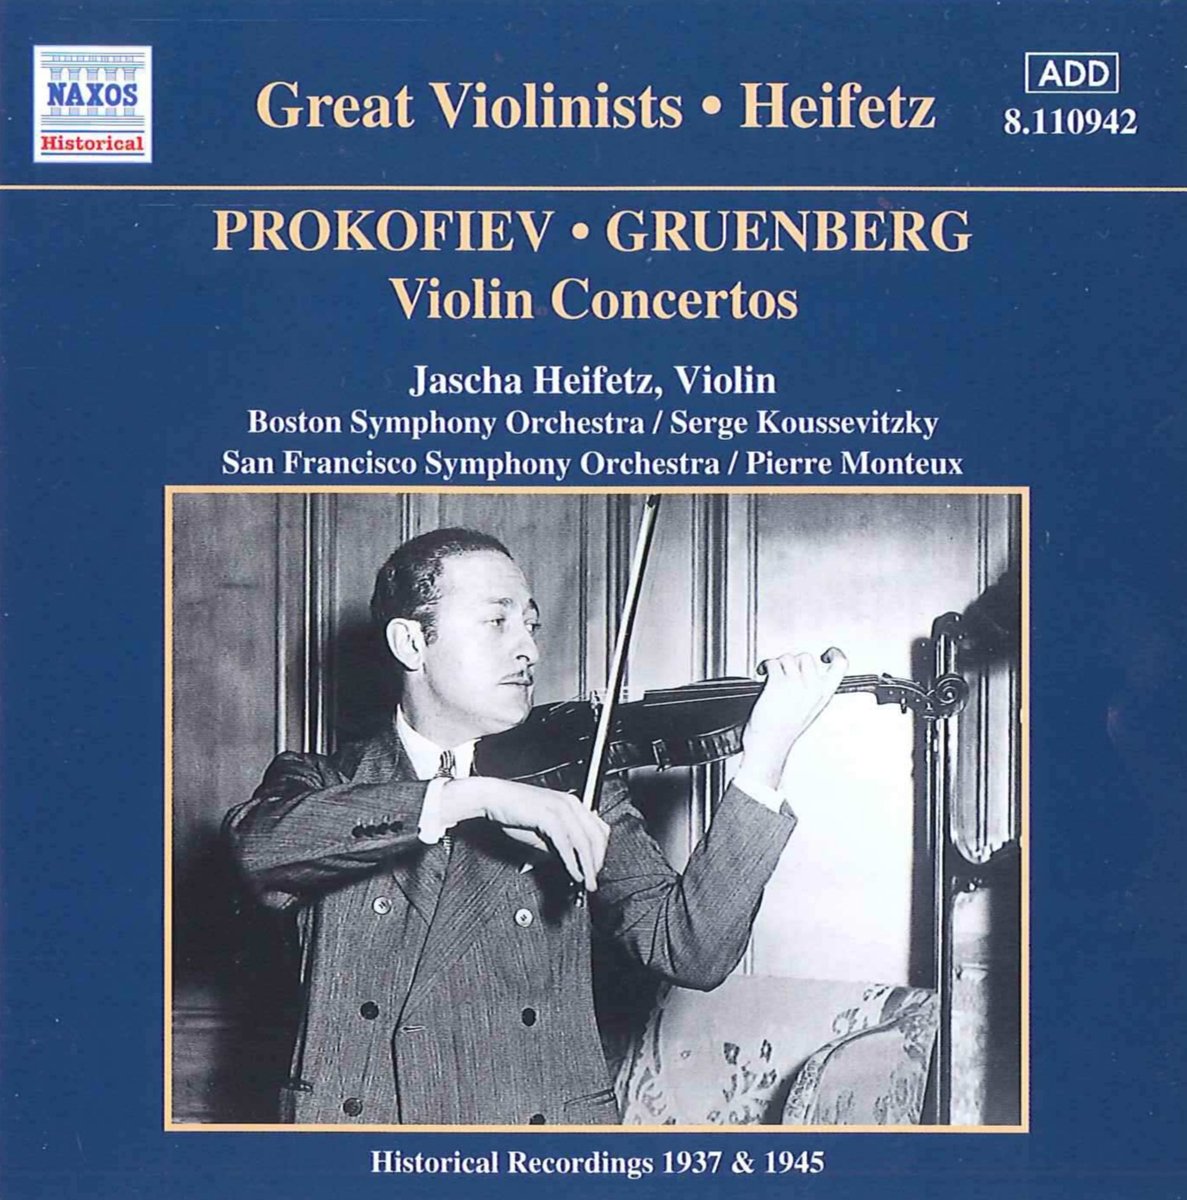 GREAT VIOLINISTS - HEIFETZ (1937-45)